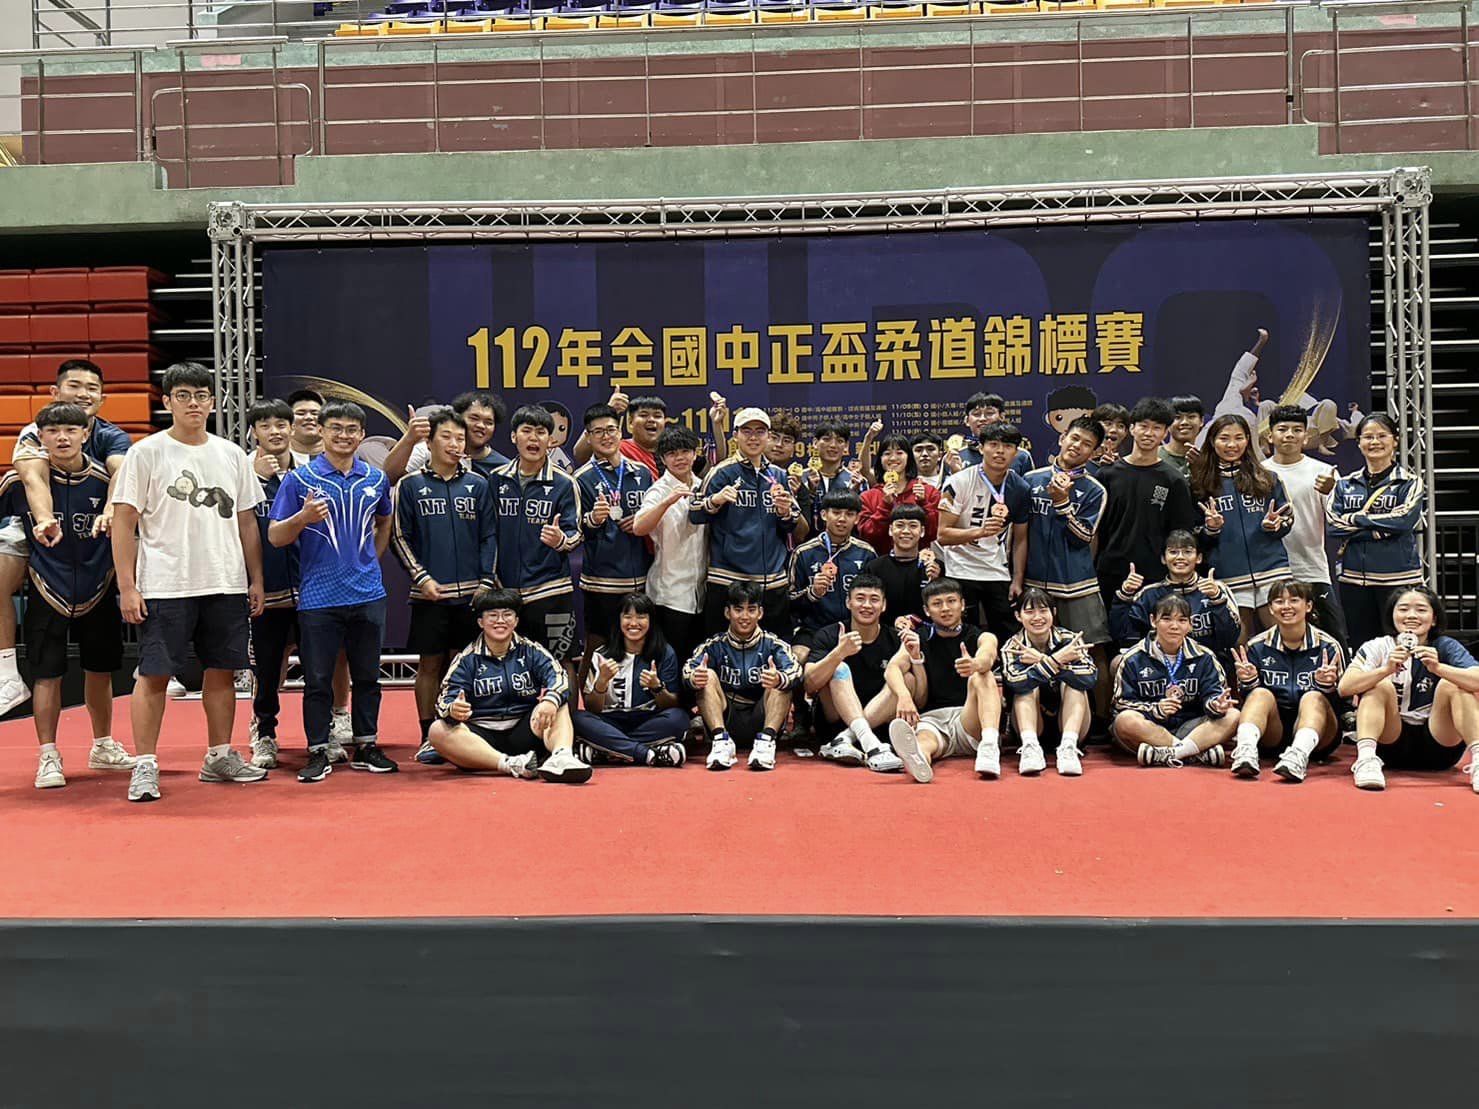 本校柔道隊參加112全國中正盃柔道錦標賽 榮獲社會男子甲組團體獲得雙銅🥉 及個人總成績5🥇5🥈5🥉